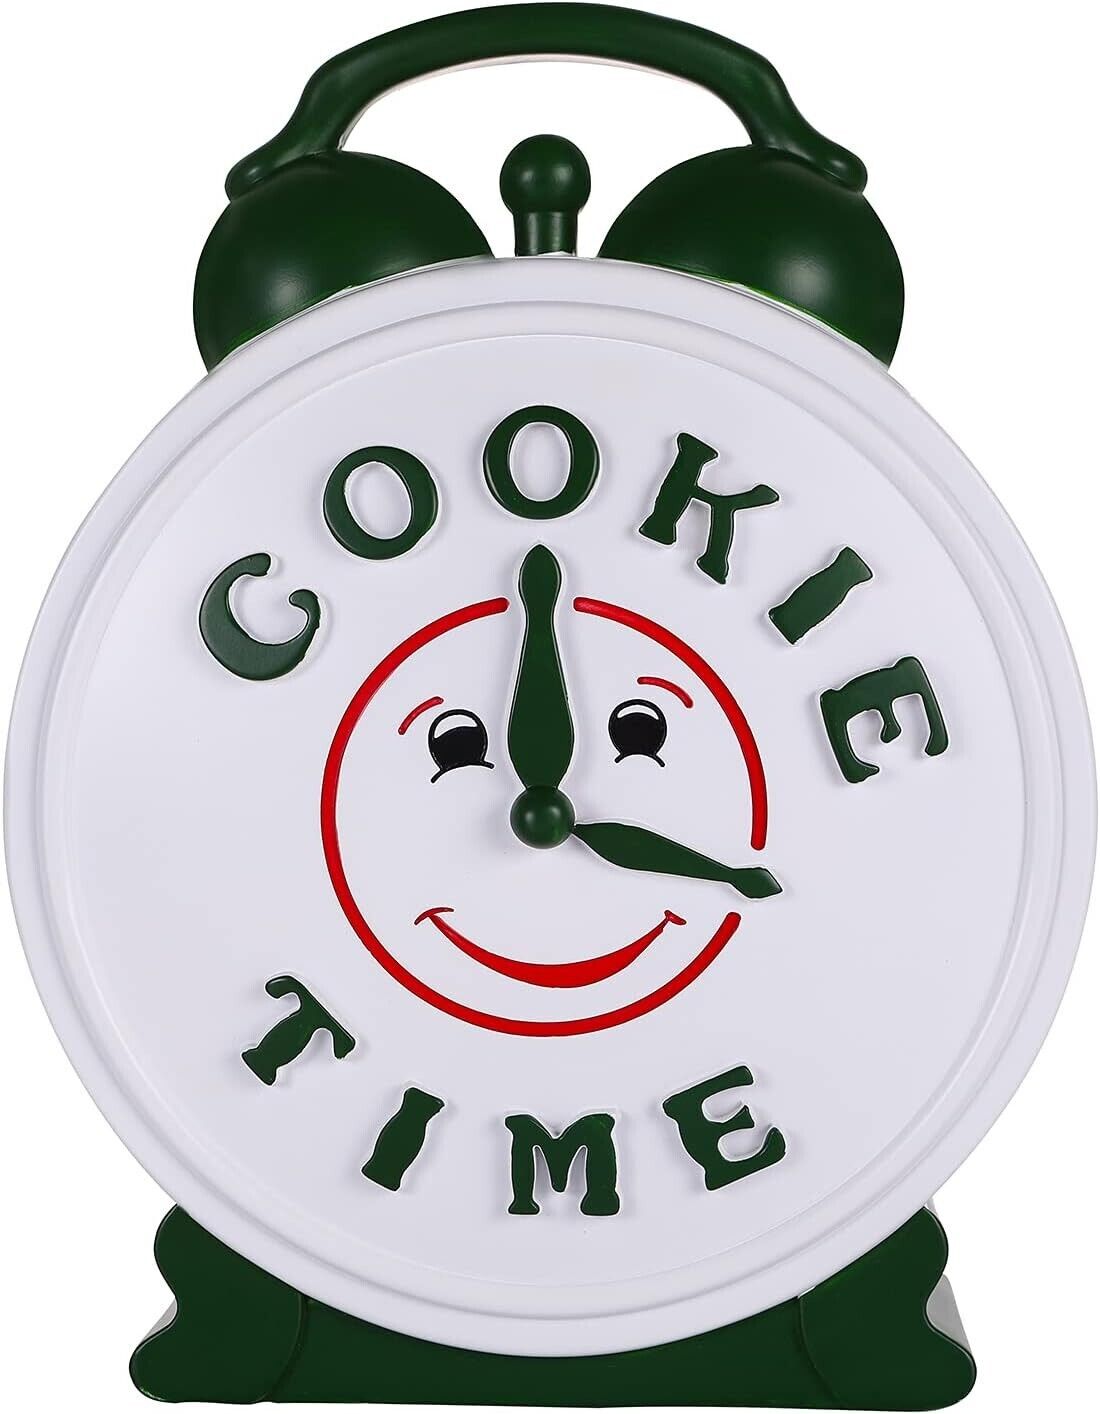 Tv Show Merchandise Cookie Jar Monica Geller Rachel Green Cookie Time Cookie